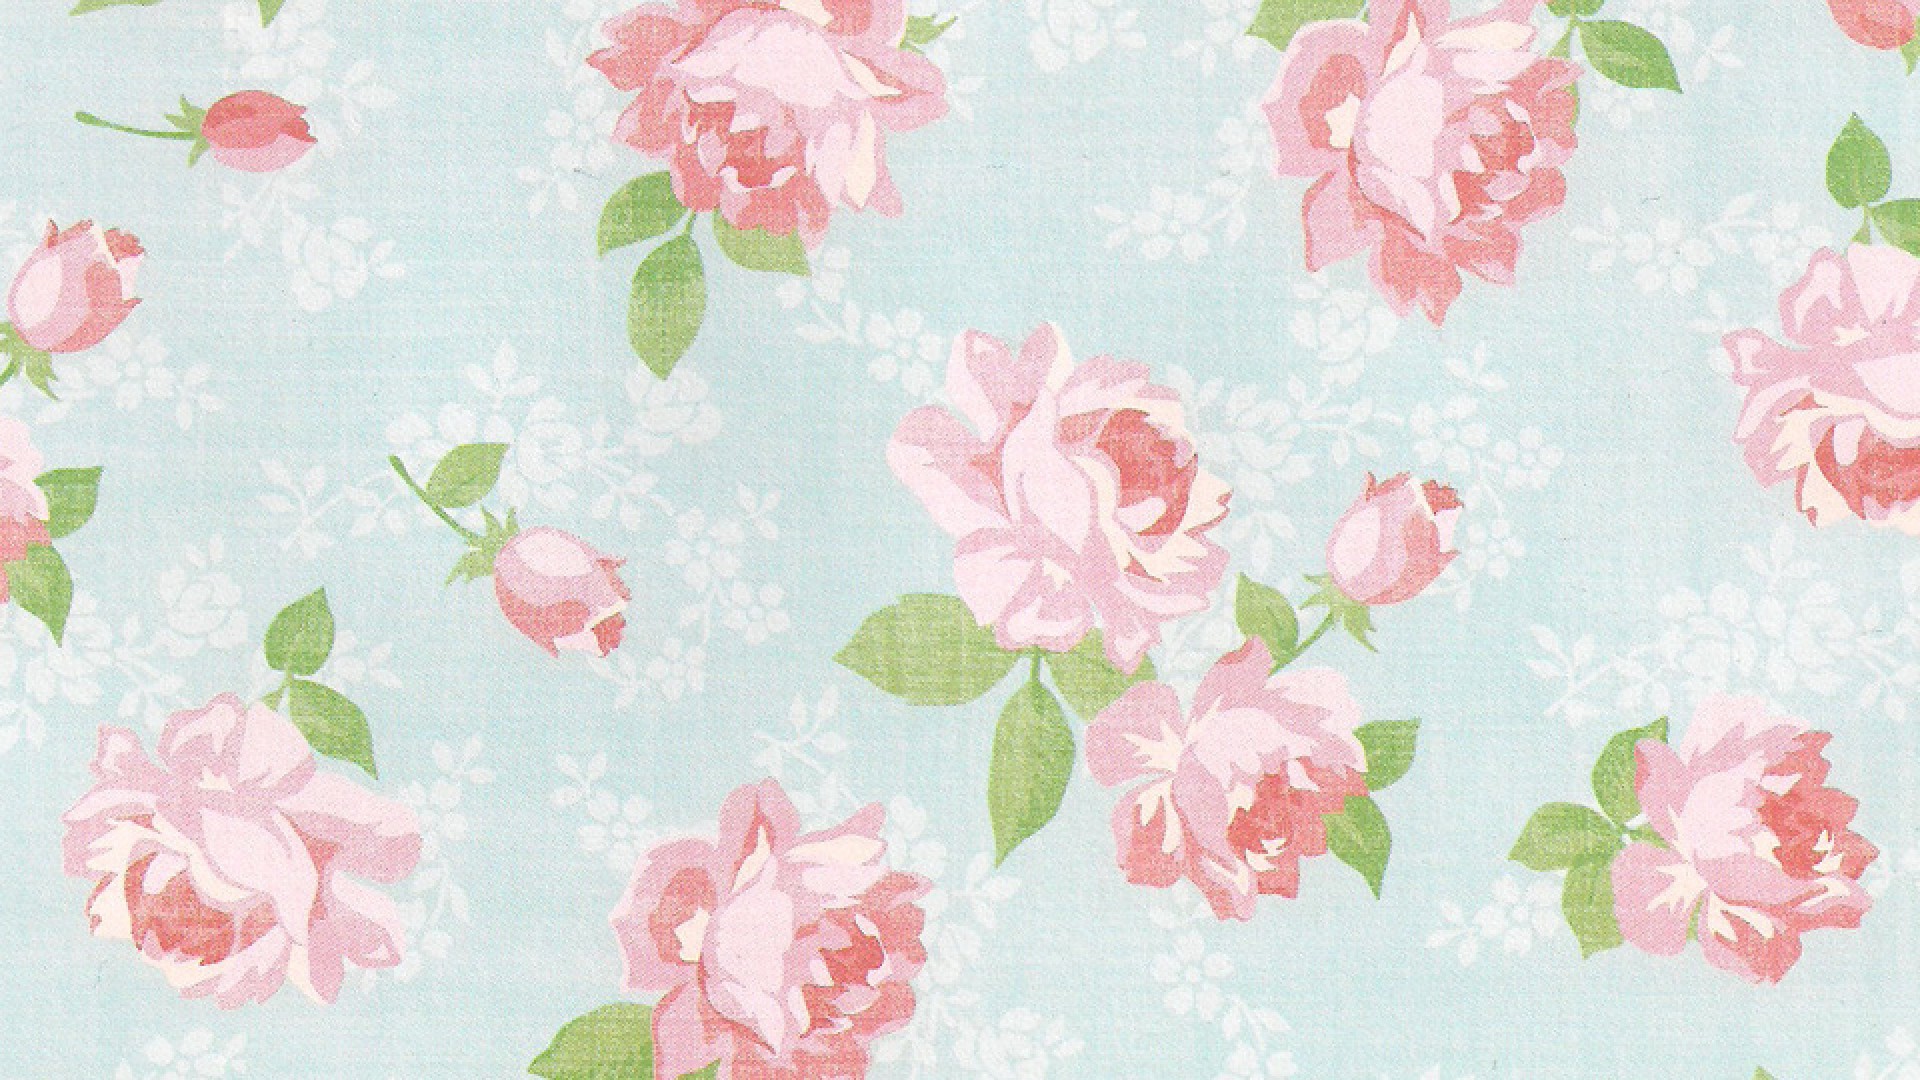 Hipster Floral Wallpapers Wide - Kemecer.com